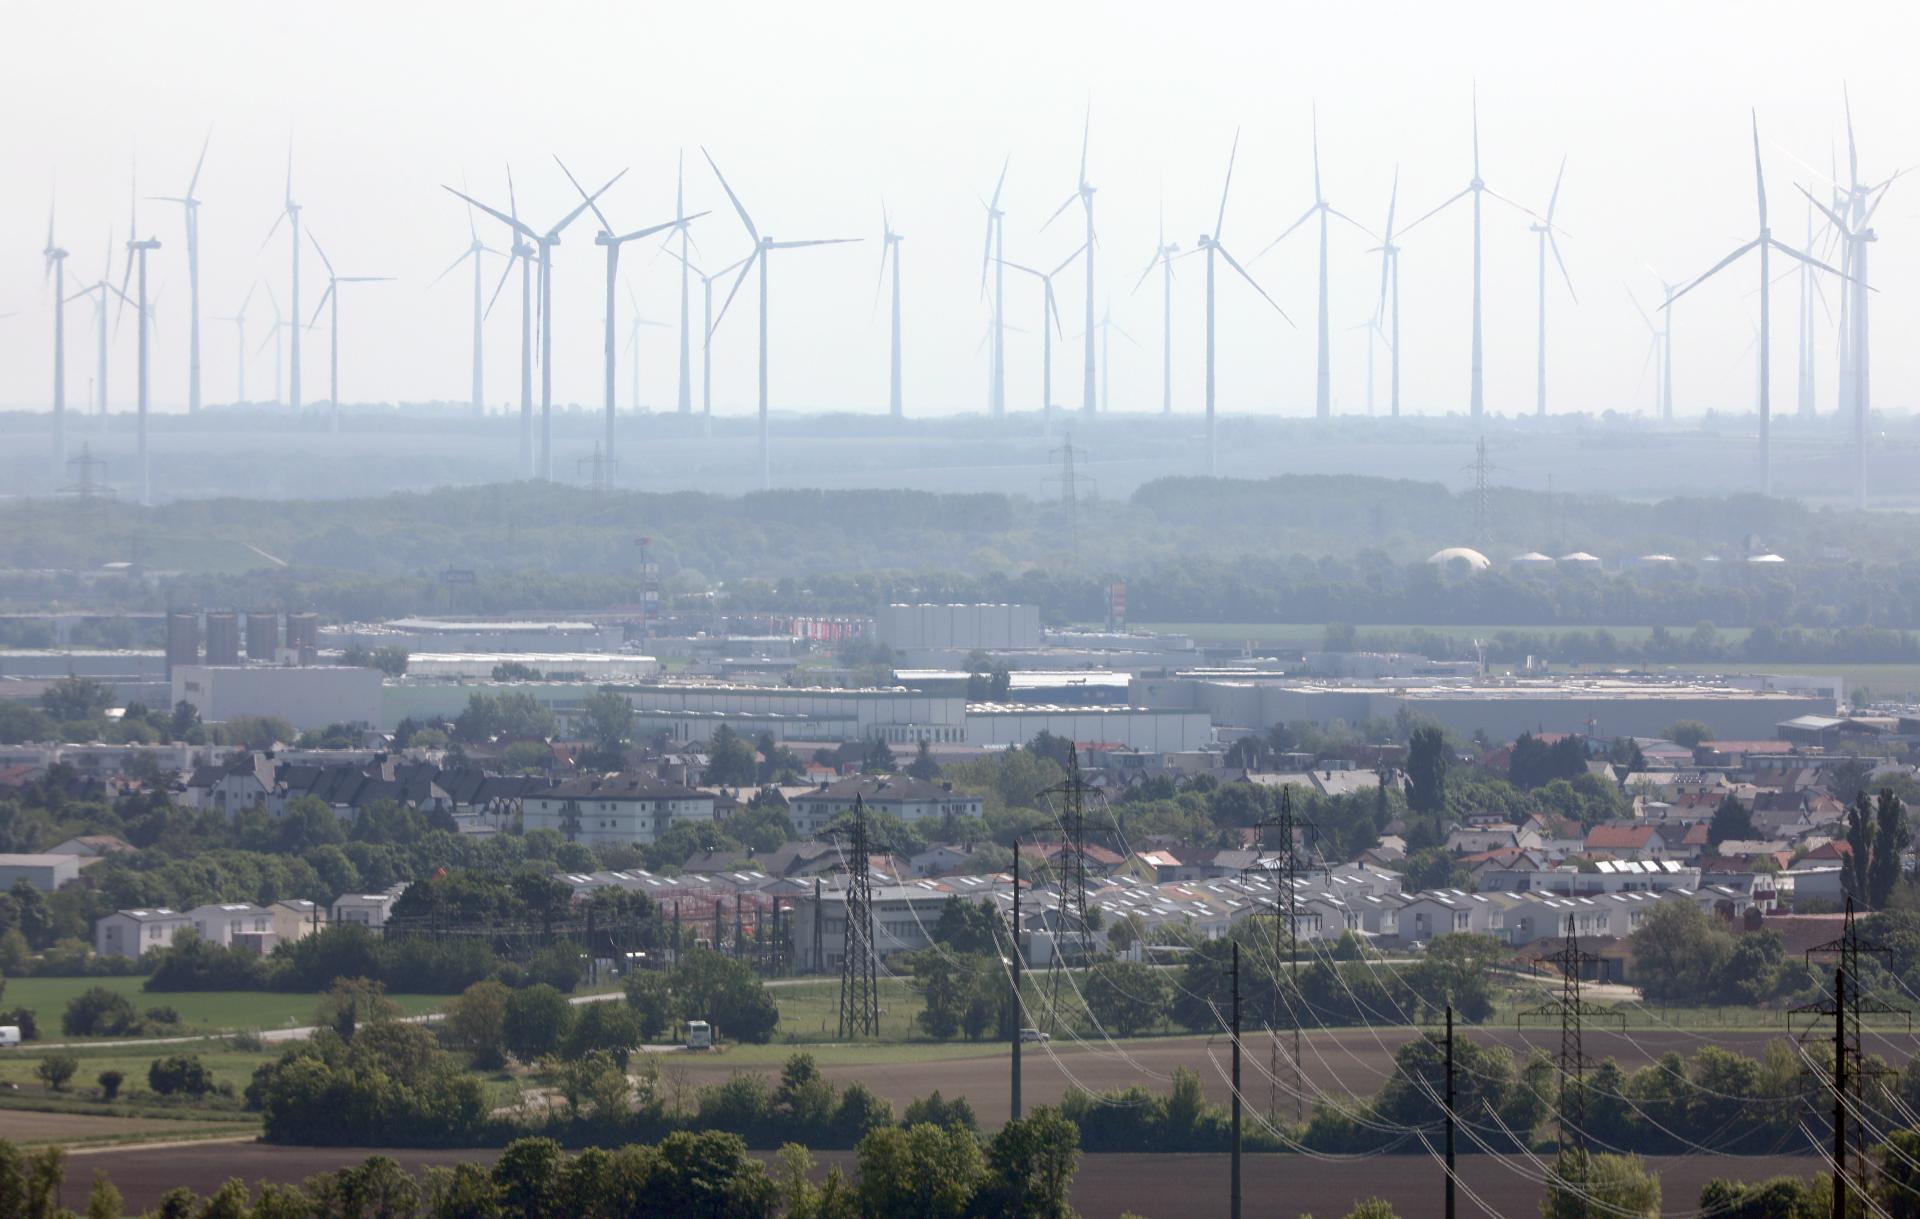 Slováci majú s Rakúšanmi veľké plány s veternou energiou. Vrtúľ má byť u nás viac ako v Maďarsku či Česku